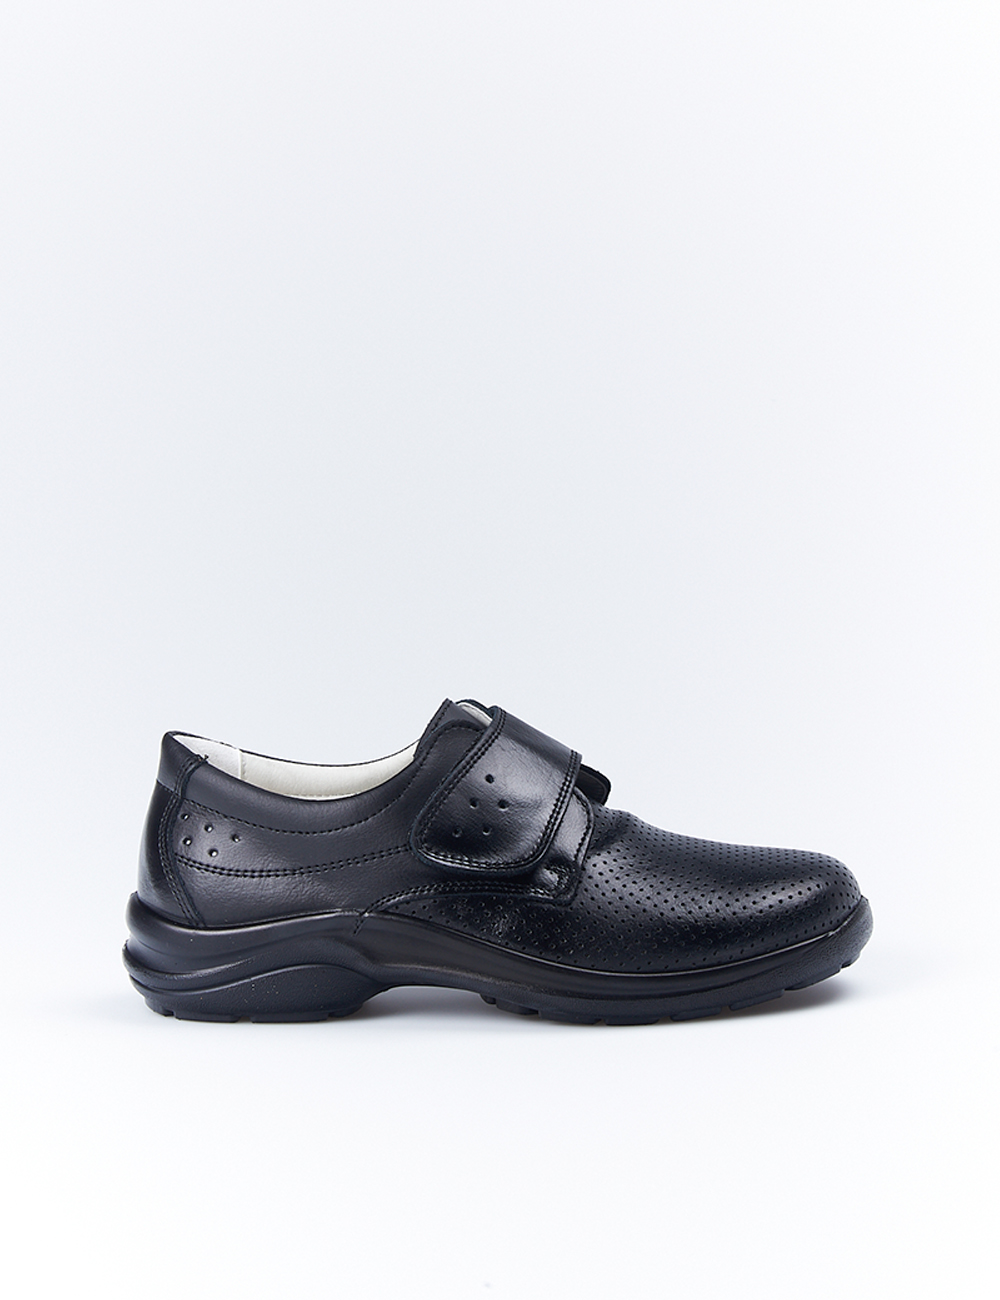 Zapatos Profesional Luisetti 0025 Negro